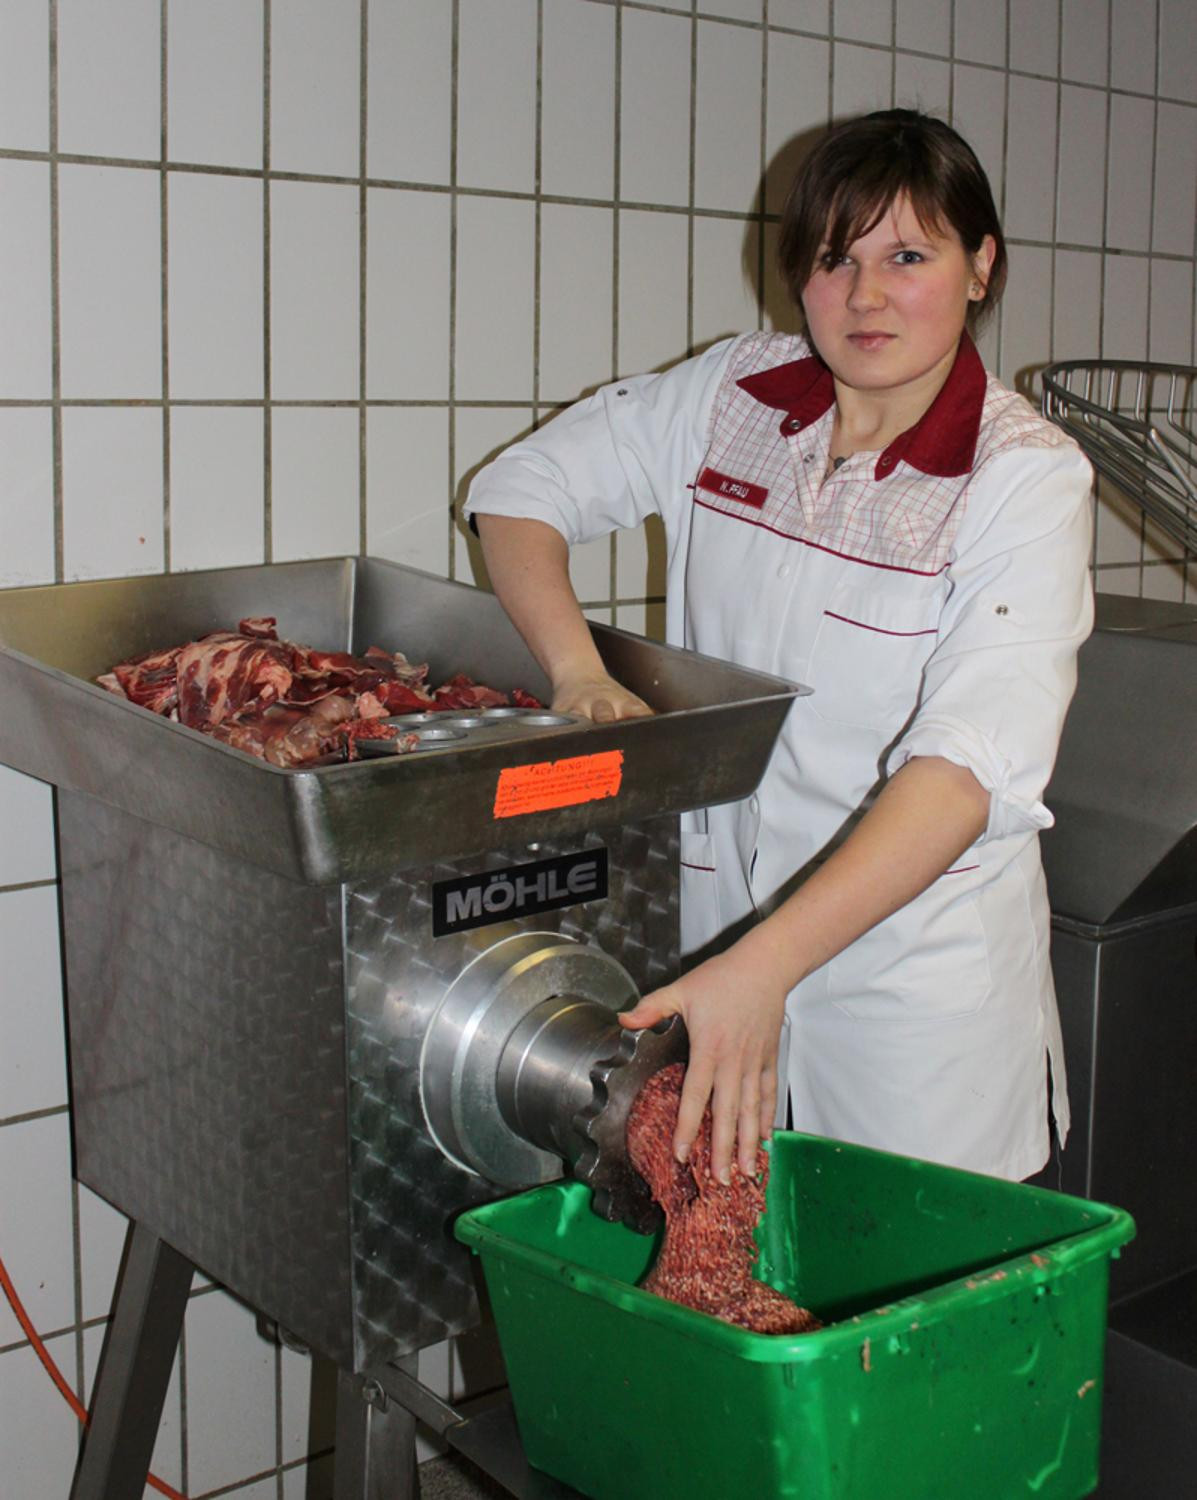 Frauen Im Handwerk
 Fleischermeisterin Nicole Pfau 26 aus Bad Hersfeld